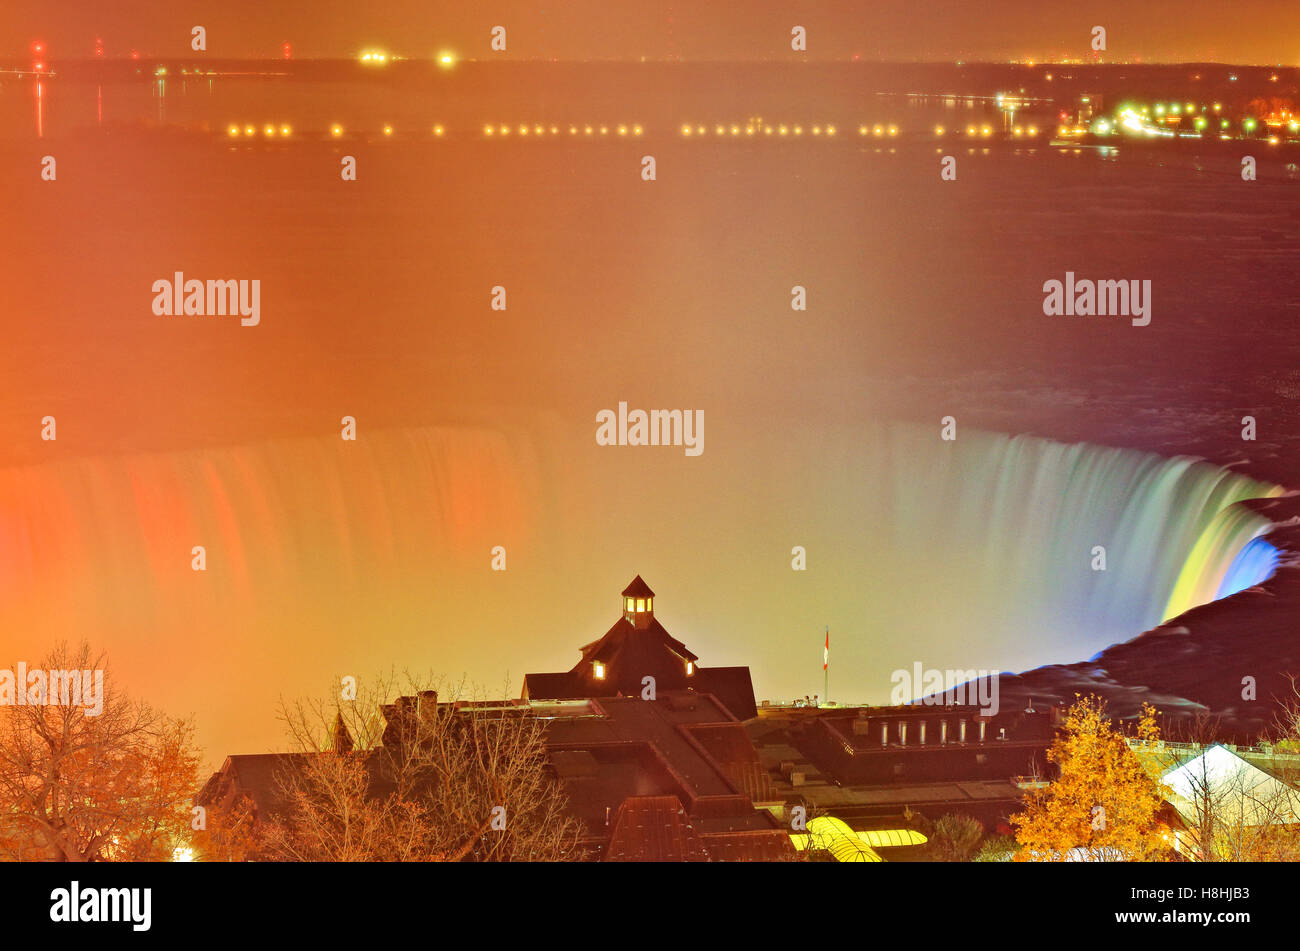 Vue aérienne de Niagara Falls illumination du grand spectacle des chutes Niagara et Table Rock Centre Bienvenue sur le côté canadien Banque D'Images